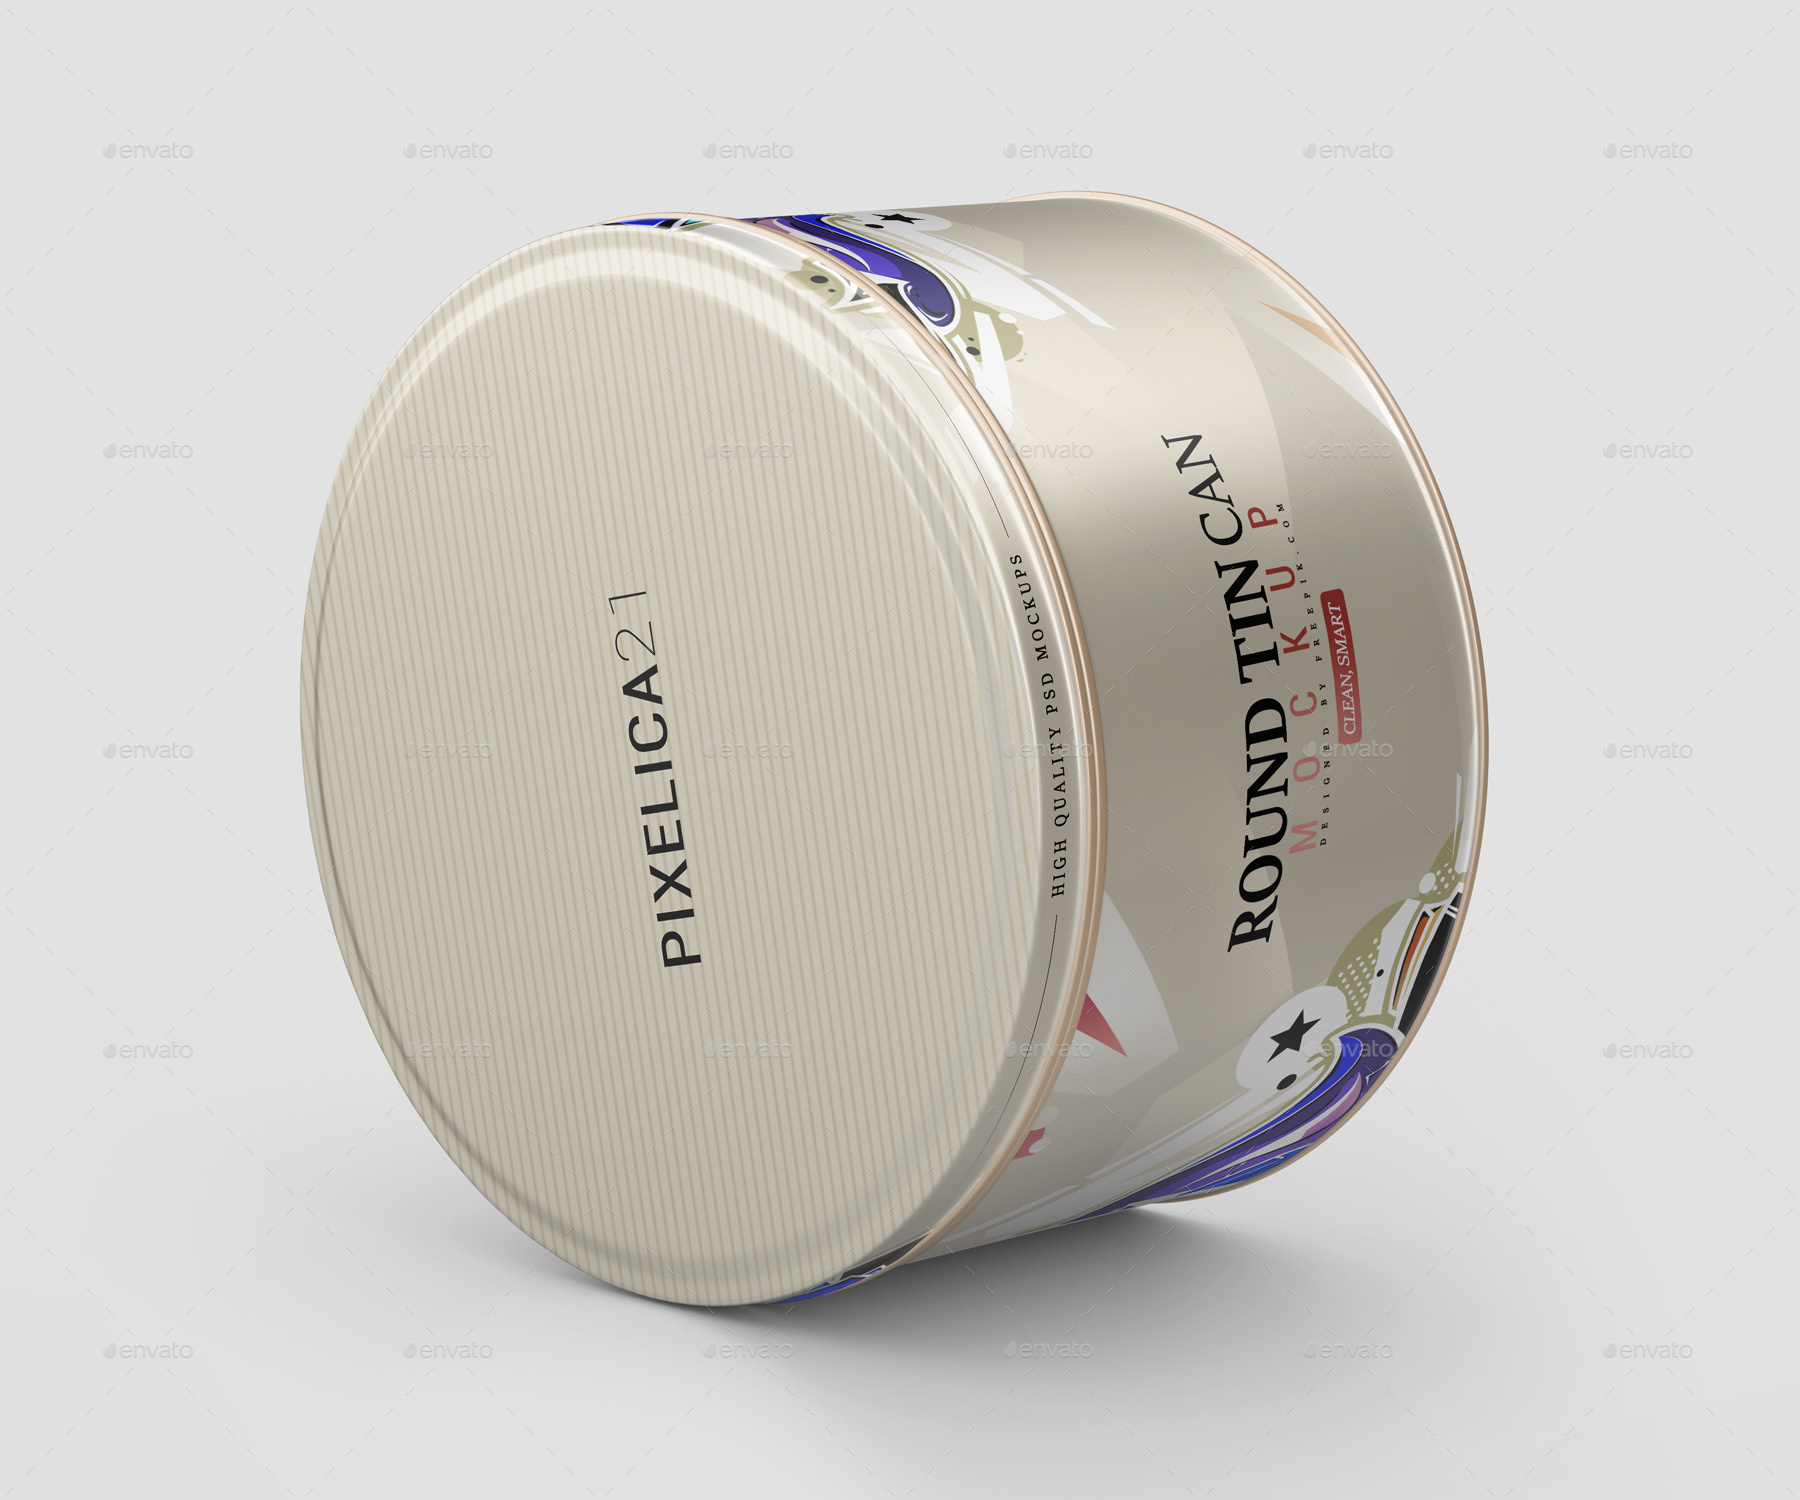 9个不同角度的圆形食品锡罐罐头包装设计样机PSD模板 Rou